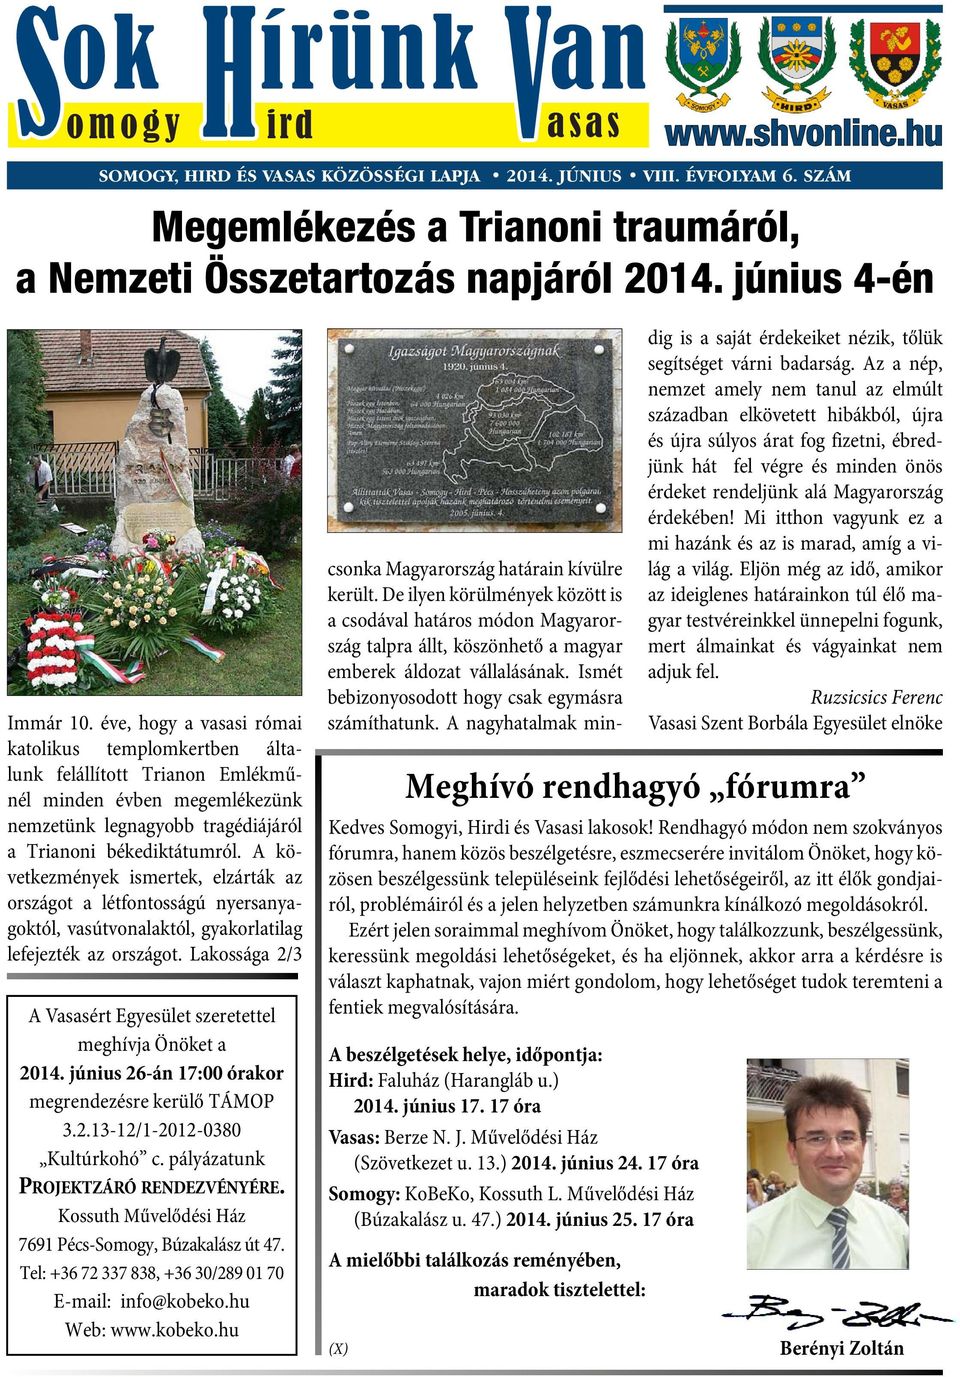 éve, hogy a vasasi római katolikus templomkertben általunk felállított Trianon Emlékműnél minden év ben megemlékezünk nemzetünk legnagyobb tragédiájáról a Trianoni békediktátumról.